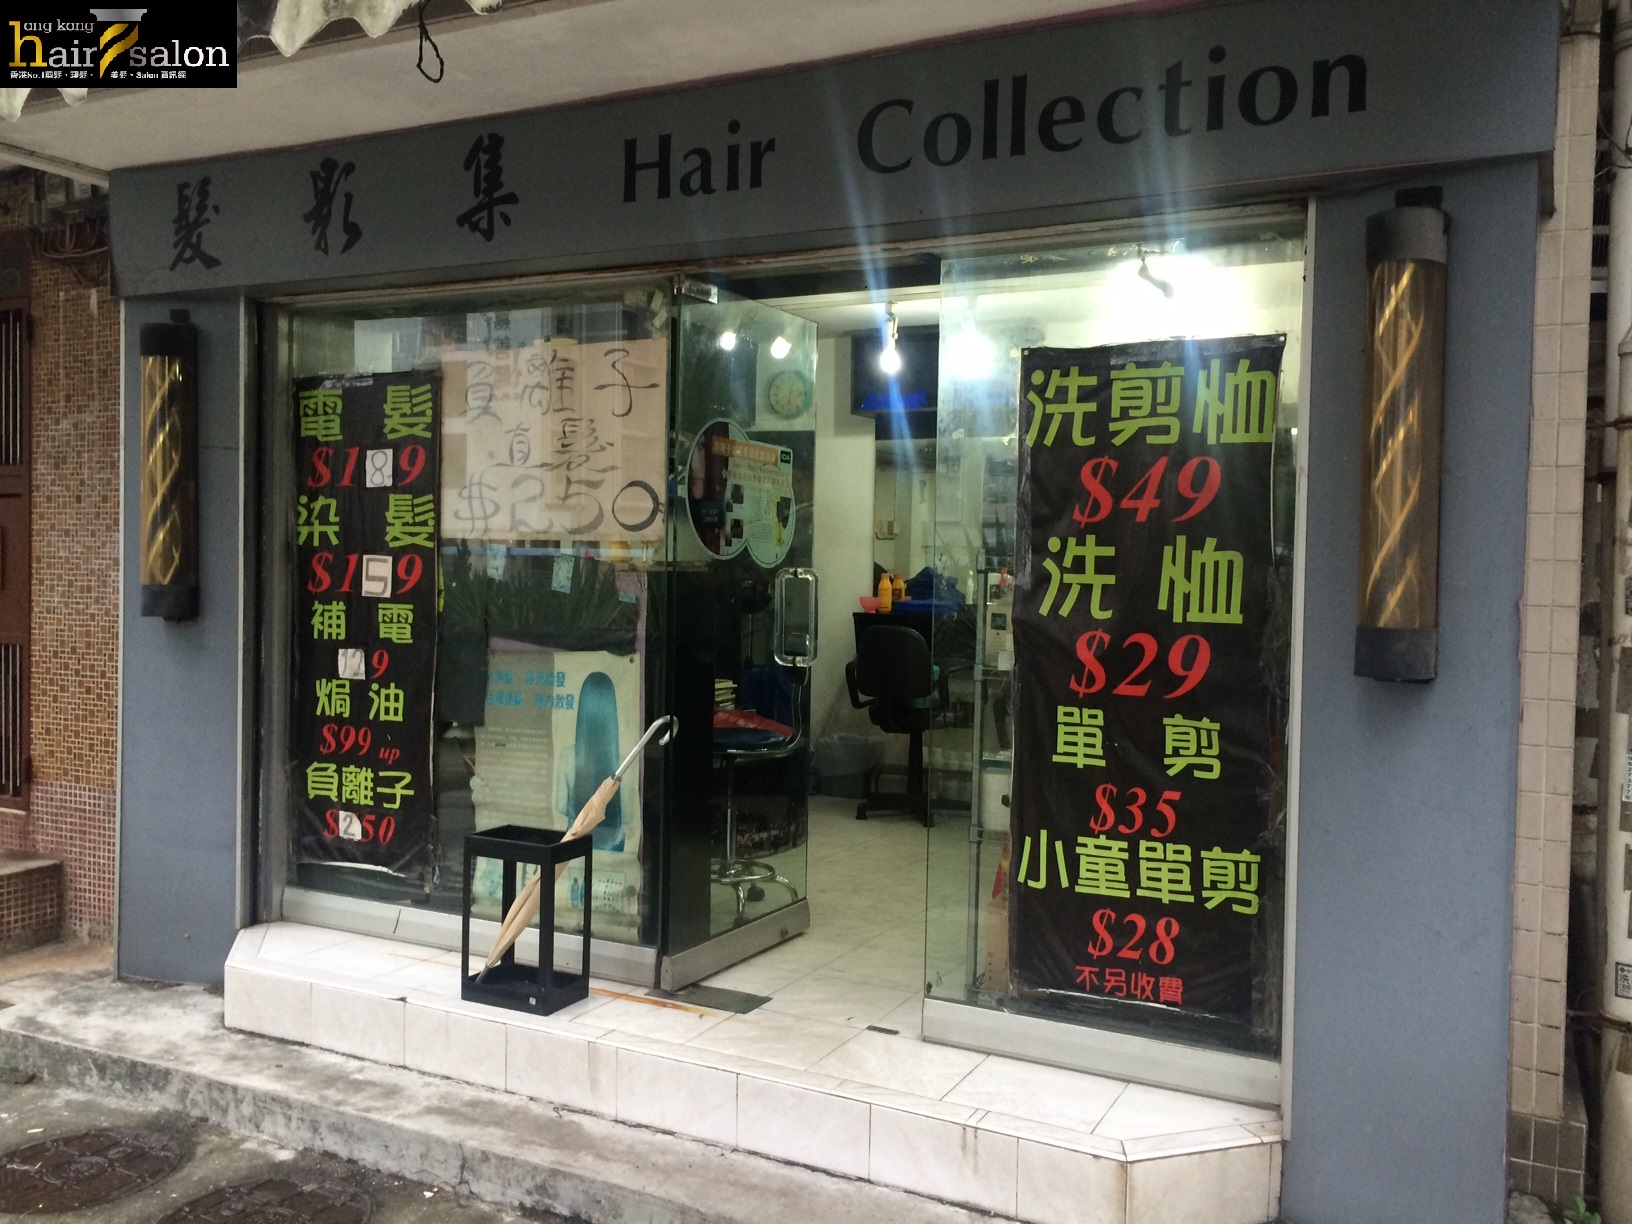 洗剪吹/洗吹造型: 髮影集 Hair Collection